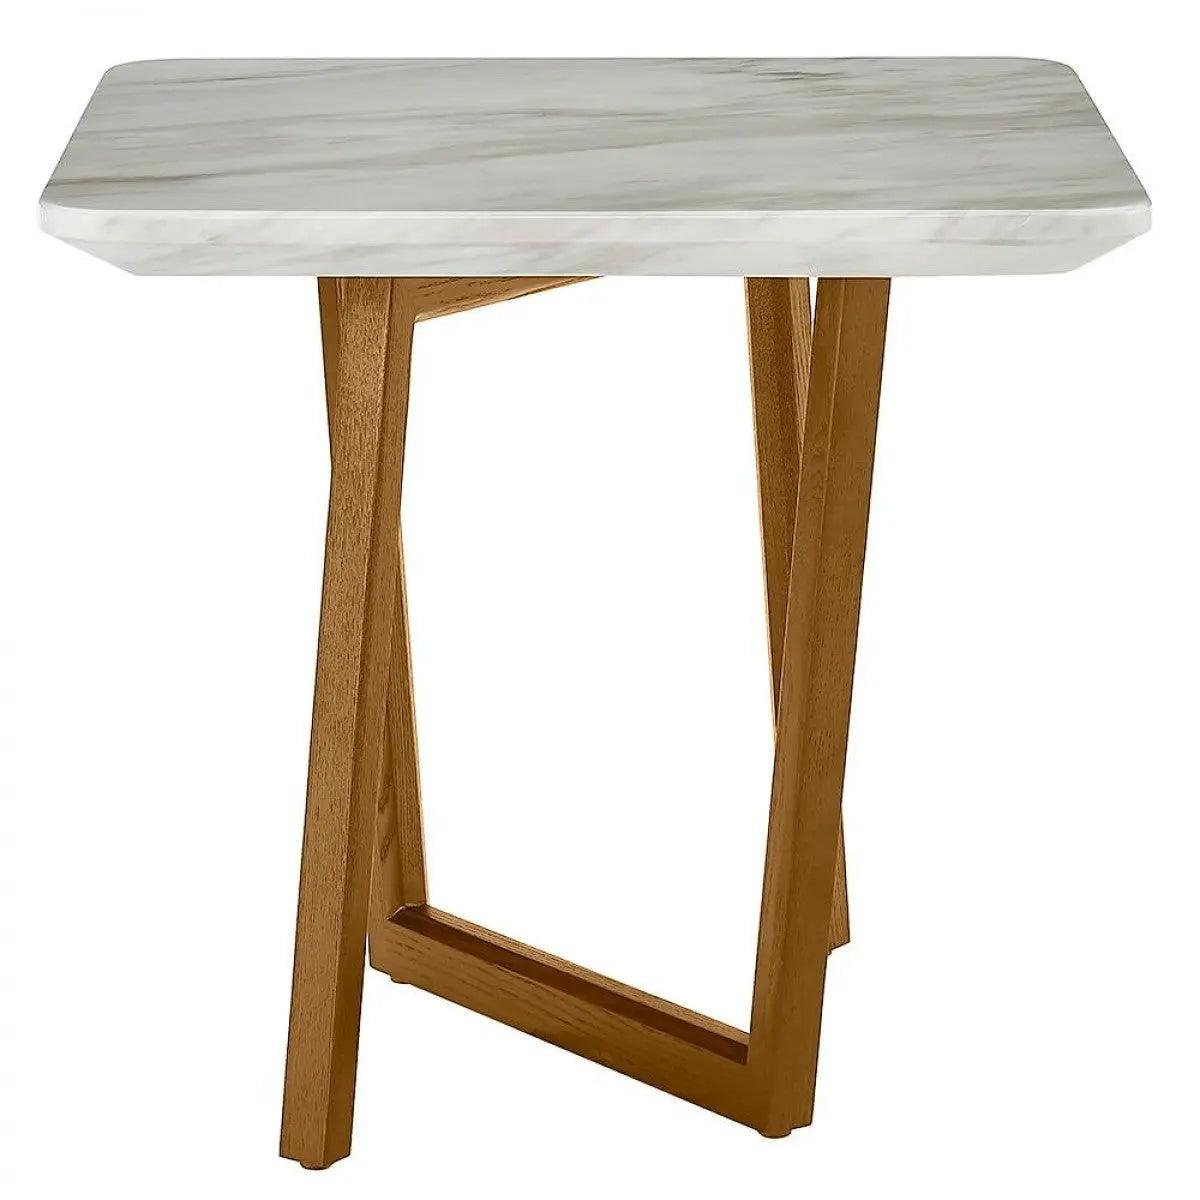 Vig Furniture - Modrest James Mid Century Walnut Ceramic End Table - Vgcset-19078-Brn-Et